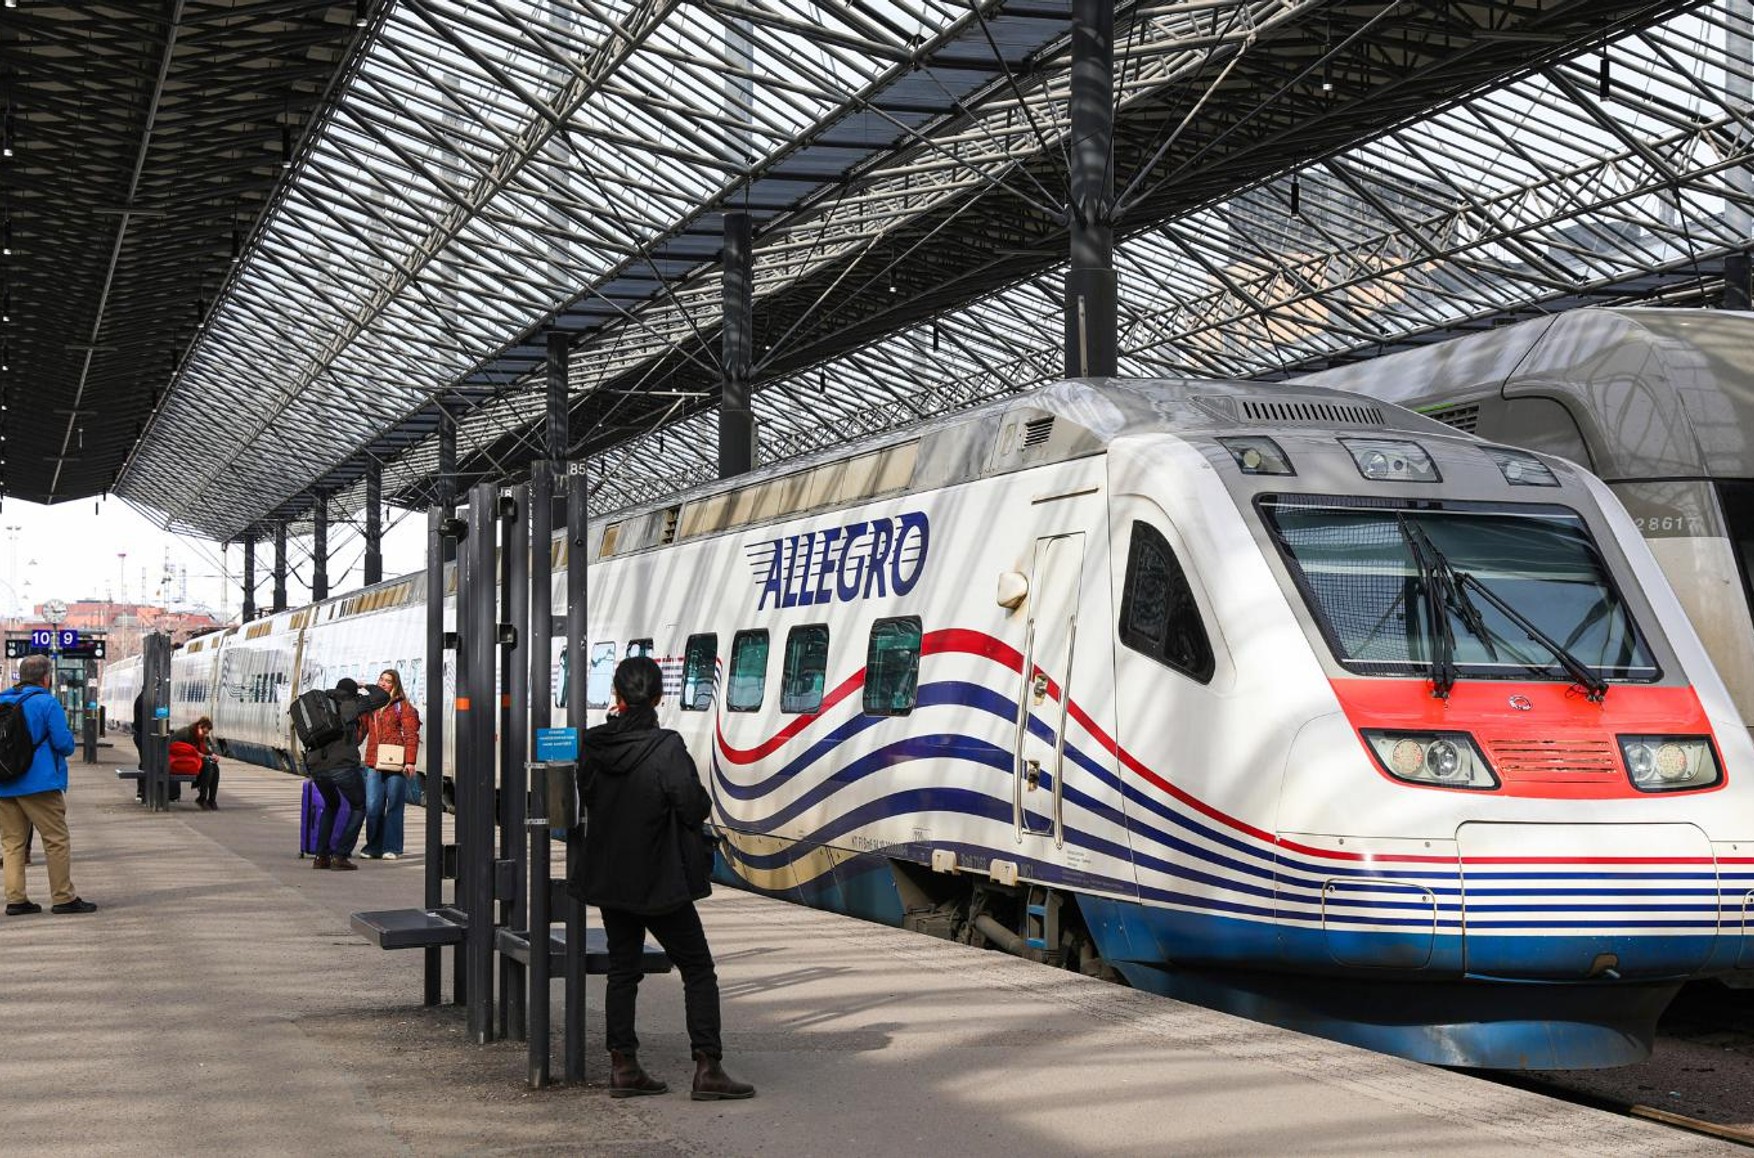 Финляндия списала все поезда Allegro, которые ходили между Петербургом и Хельсинки